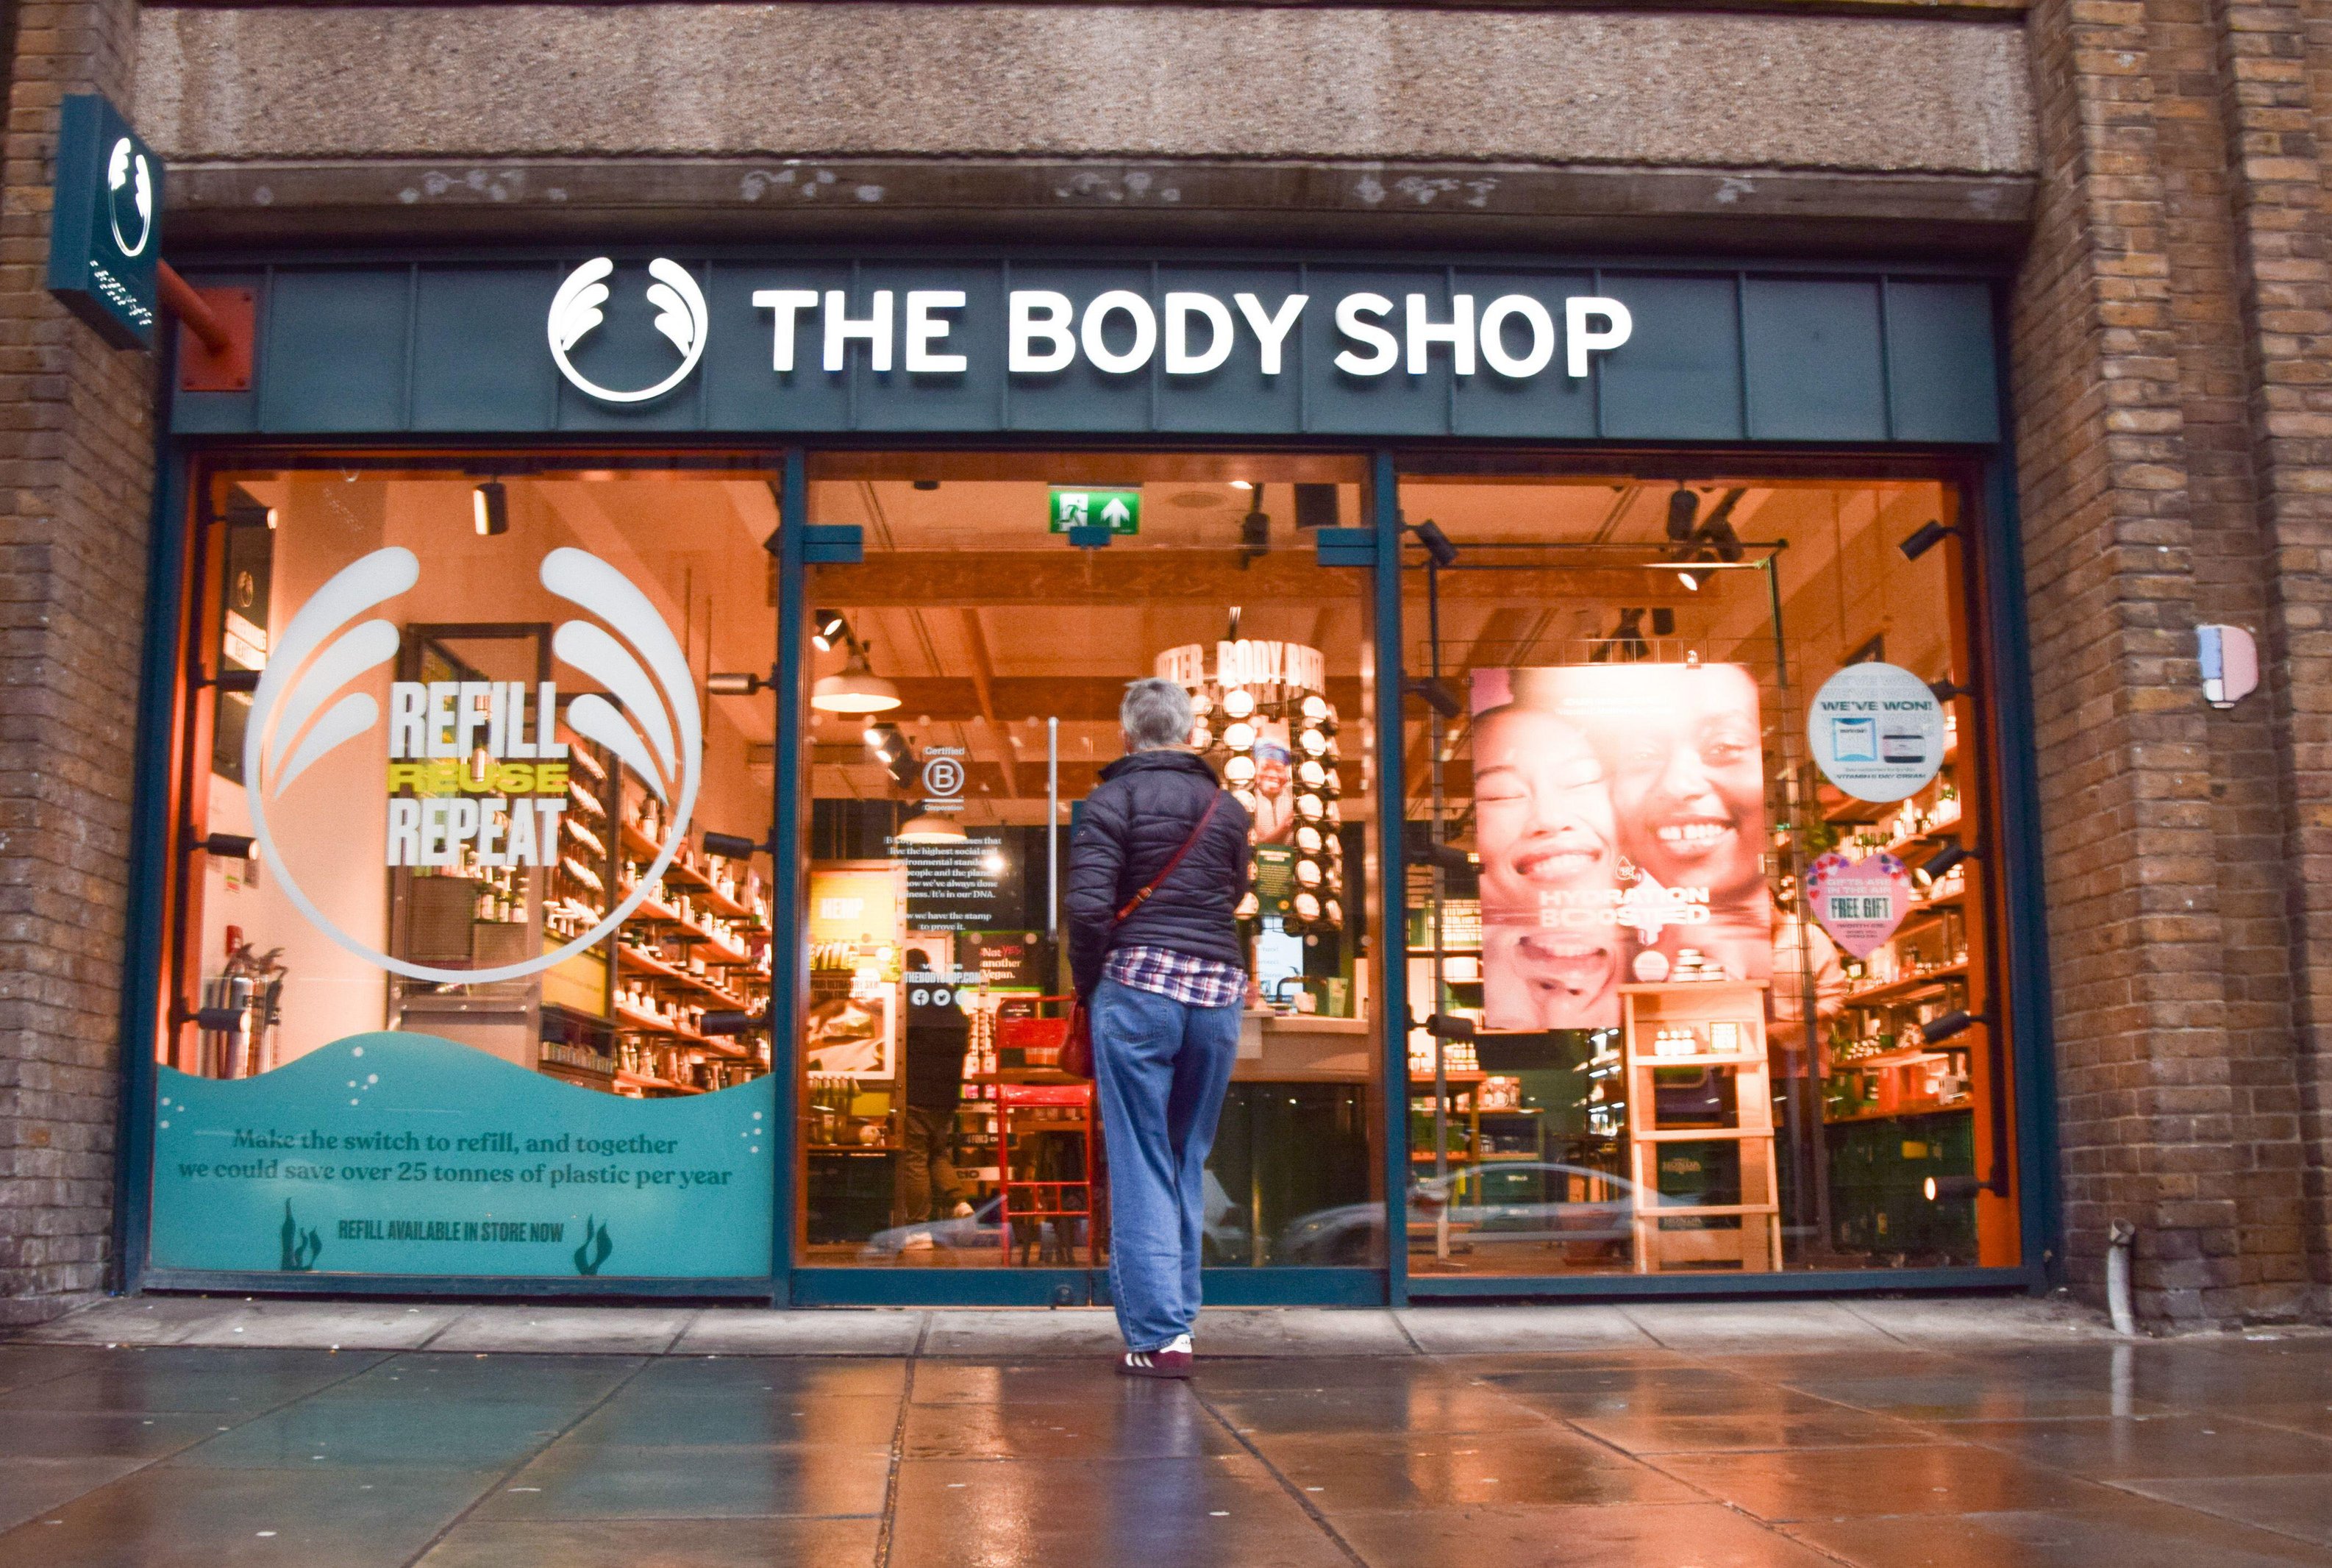 Les administrateurs de The Body Shop ont fixé une date limite aux acheteurs pour soumettre des offres afin de sauver 1 500 emplois